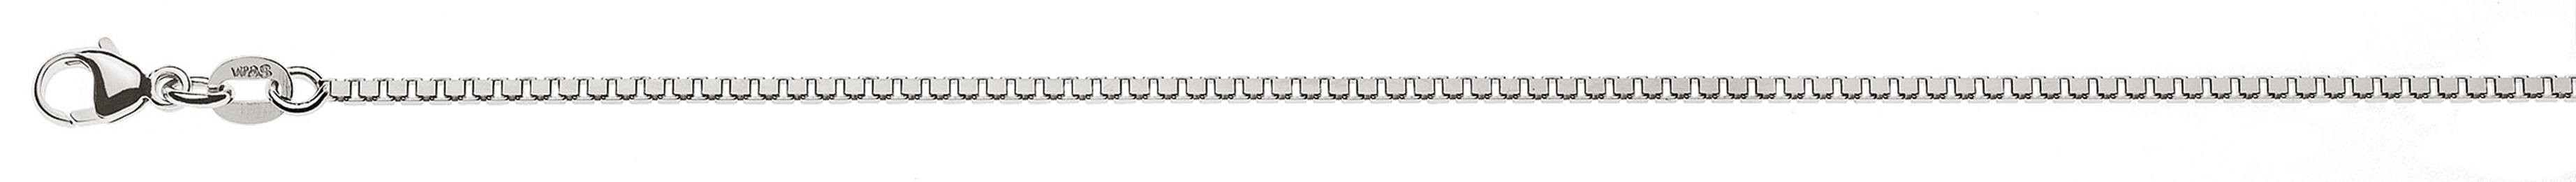 AURONOS Prestige Halskette Weissgold 18K Venezianerkette diamantiert 45cm 1.4mm